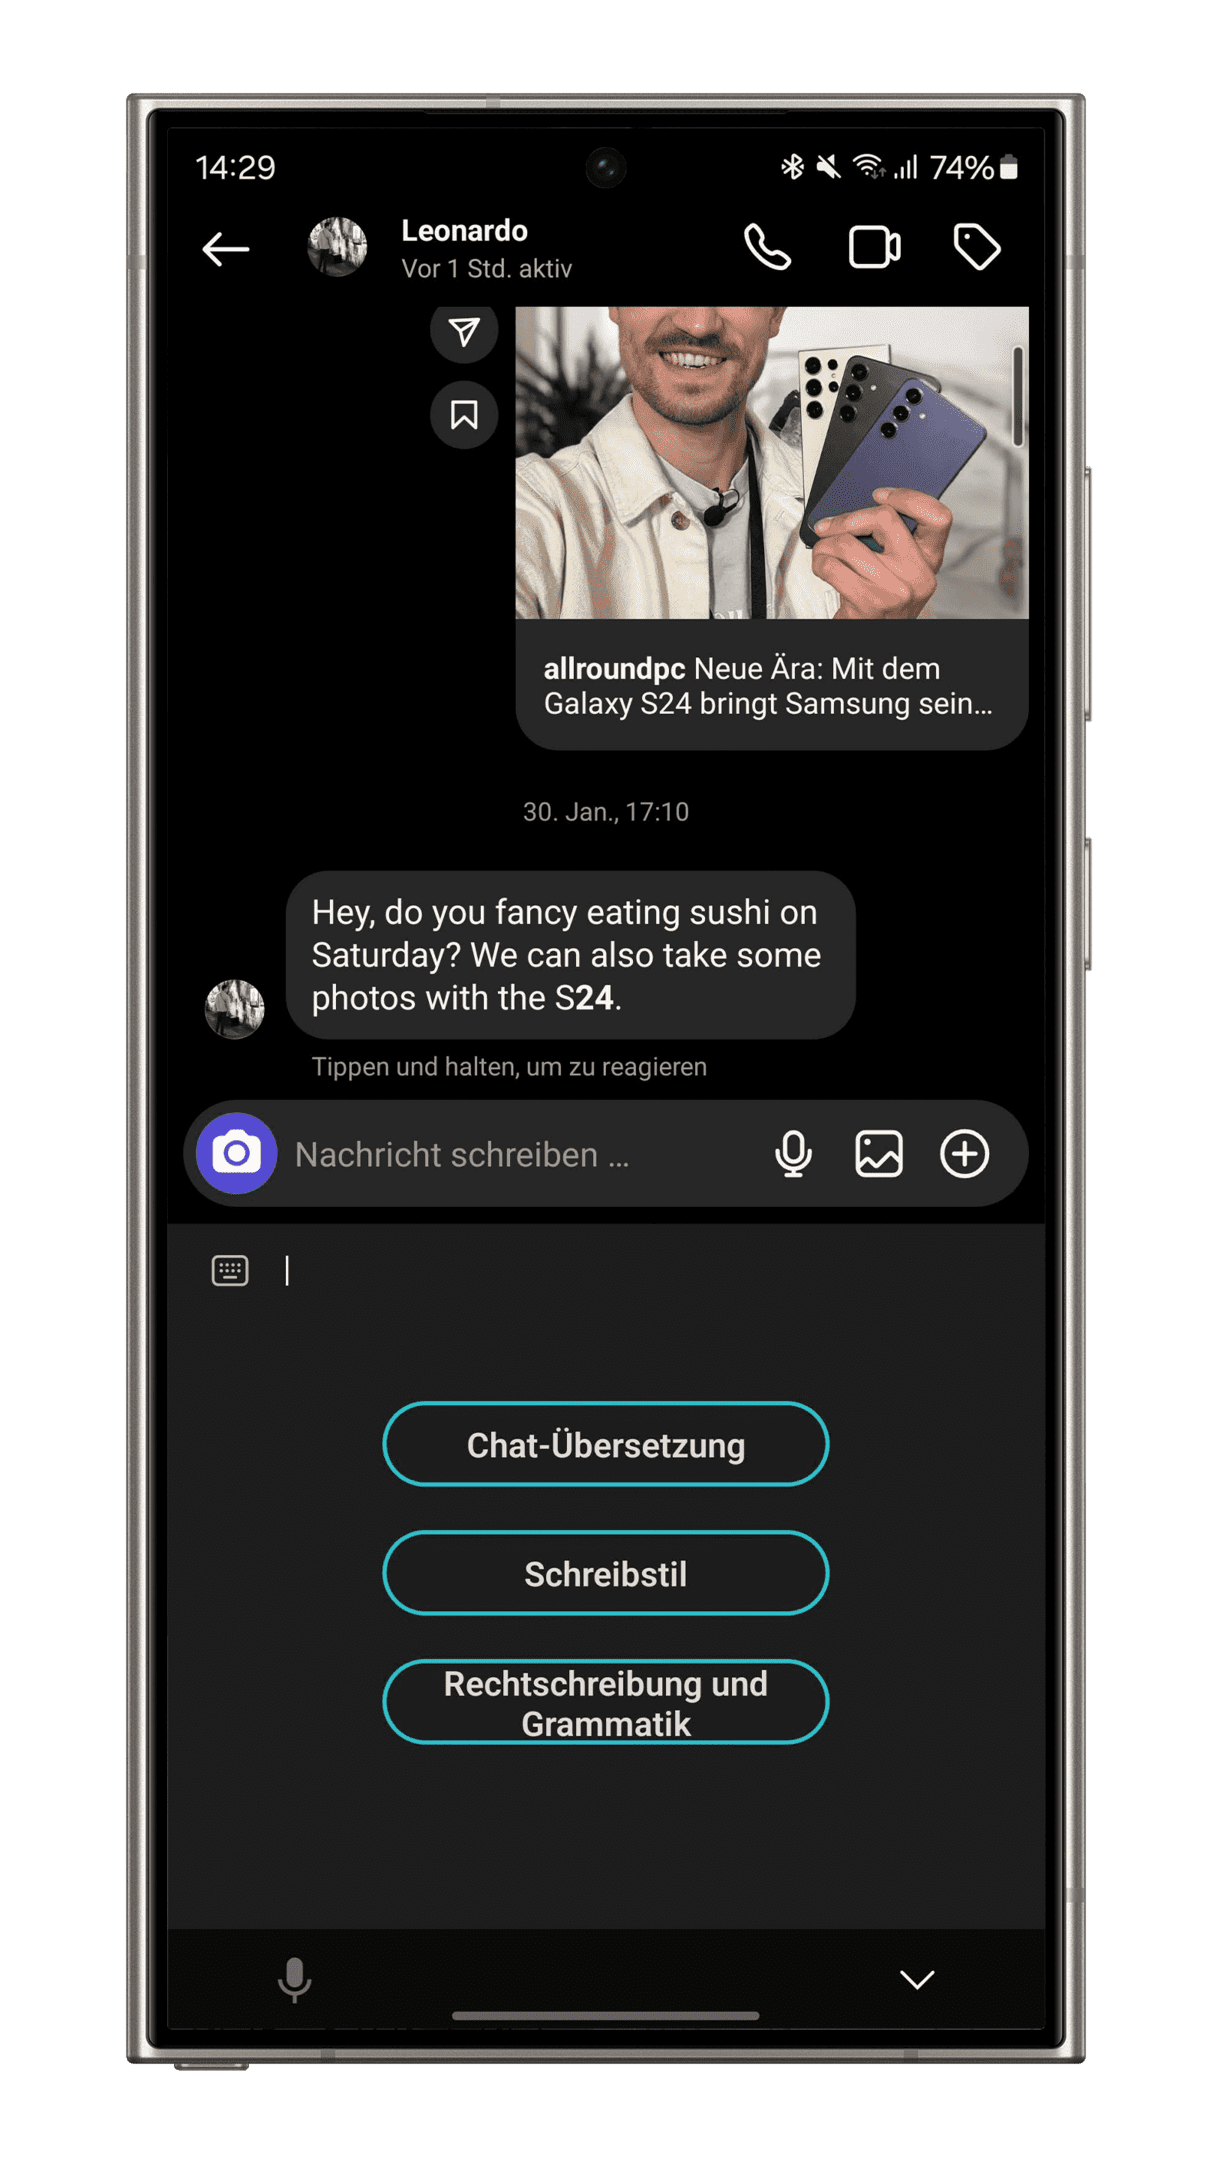 Samsung Galaxy S24 Plus Ultra Smartphone Tipps AI-Funktionen Chat Uebersetzung Sprachstile